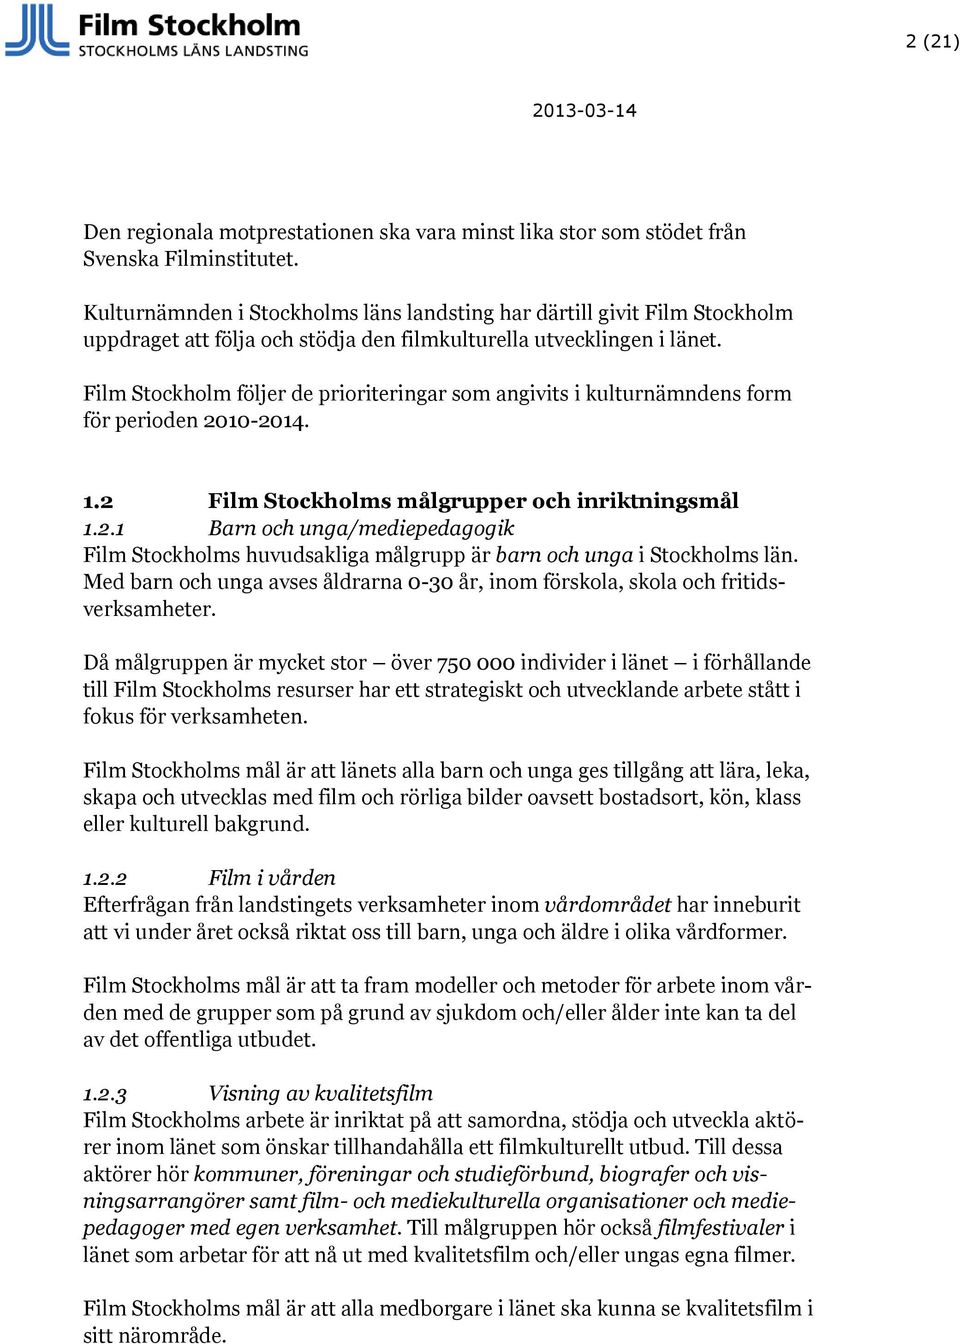 Film Stockholm följer de prioriteringar som angivits i kulturnämndens form för perioden 2010-2014. 1.2 Film Stockholms målgrupper och inriktningsmål 1.2.1 Barn och unga/mediepedagogik Film Stockholms huvudsakliga målgrupp är barn och unga i Stockholms län.